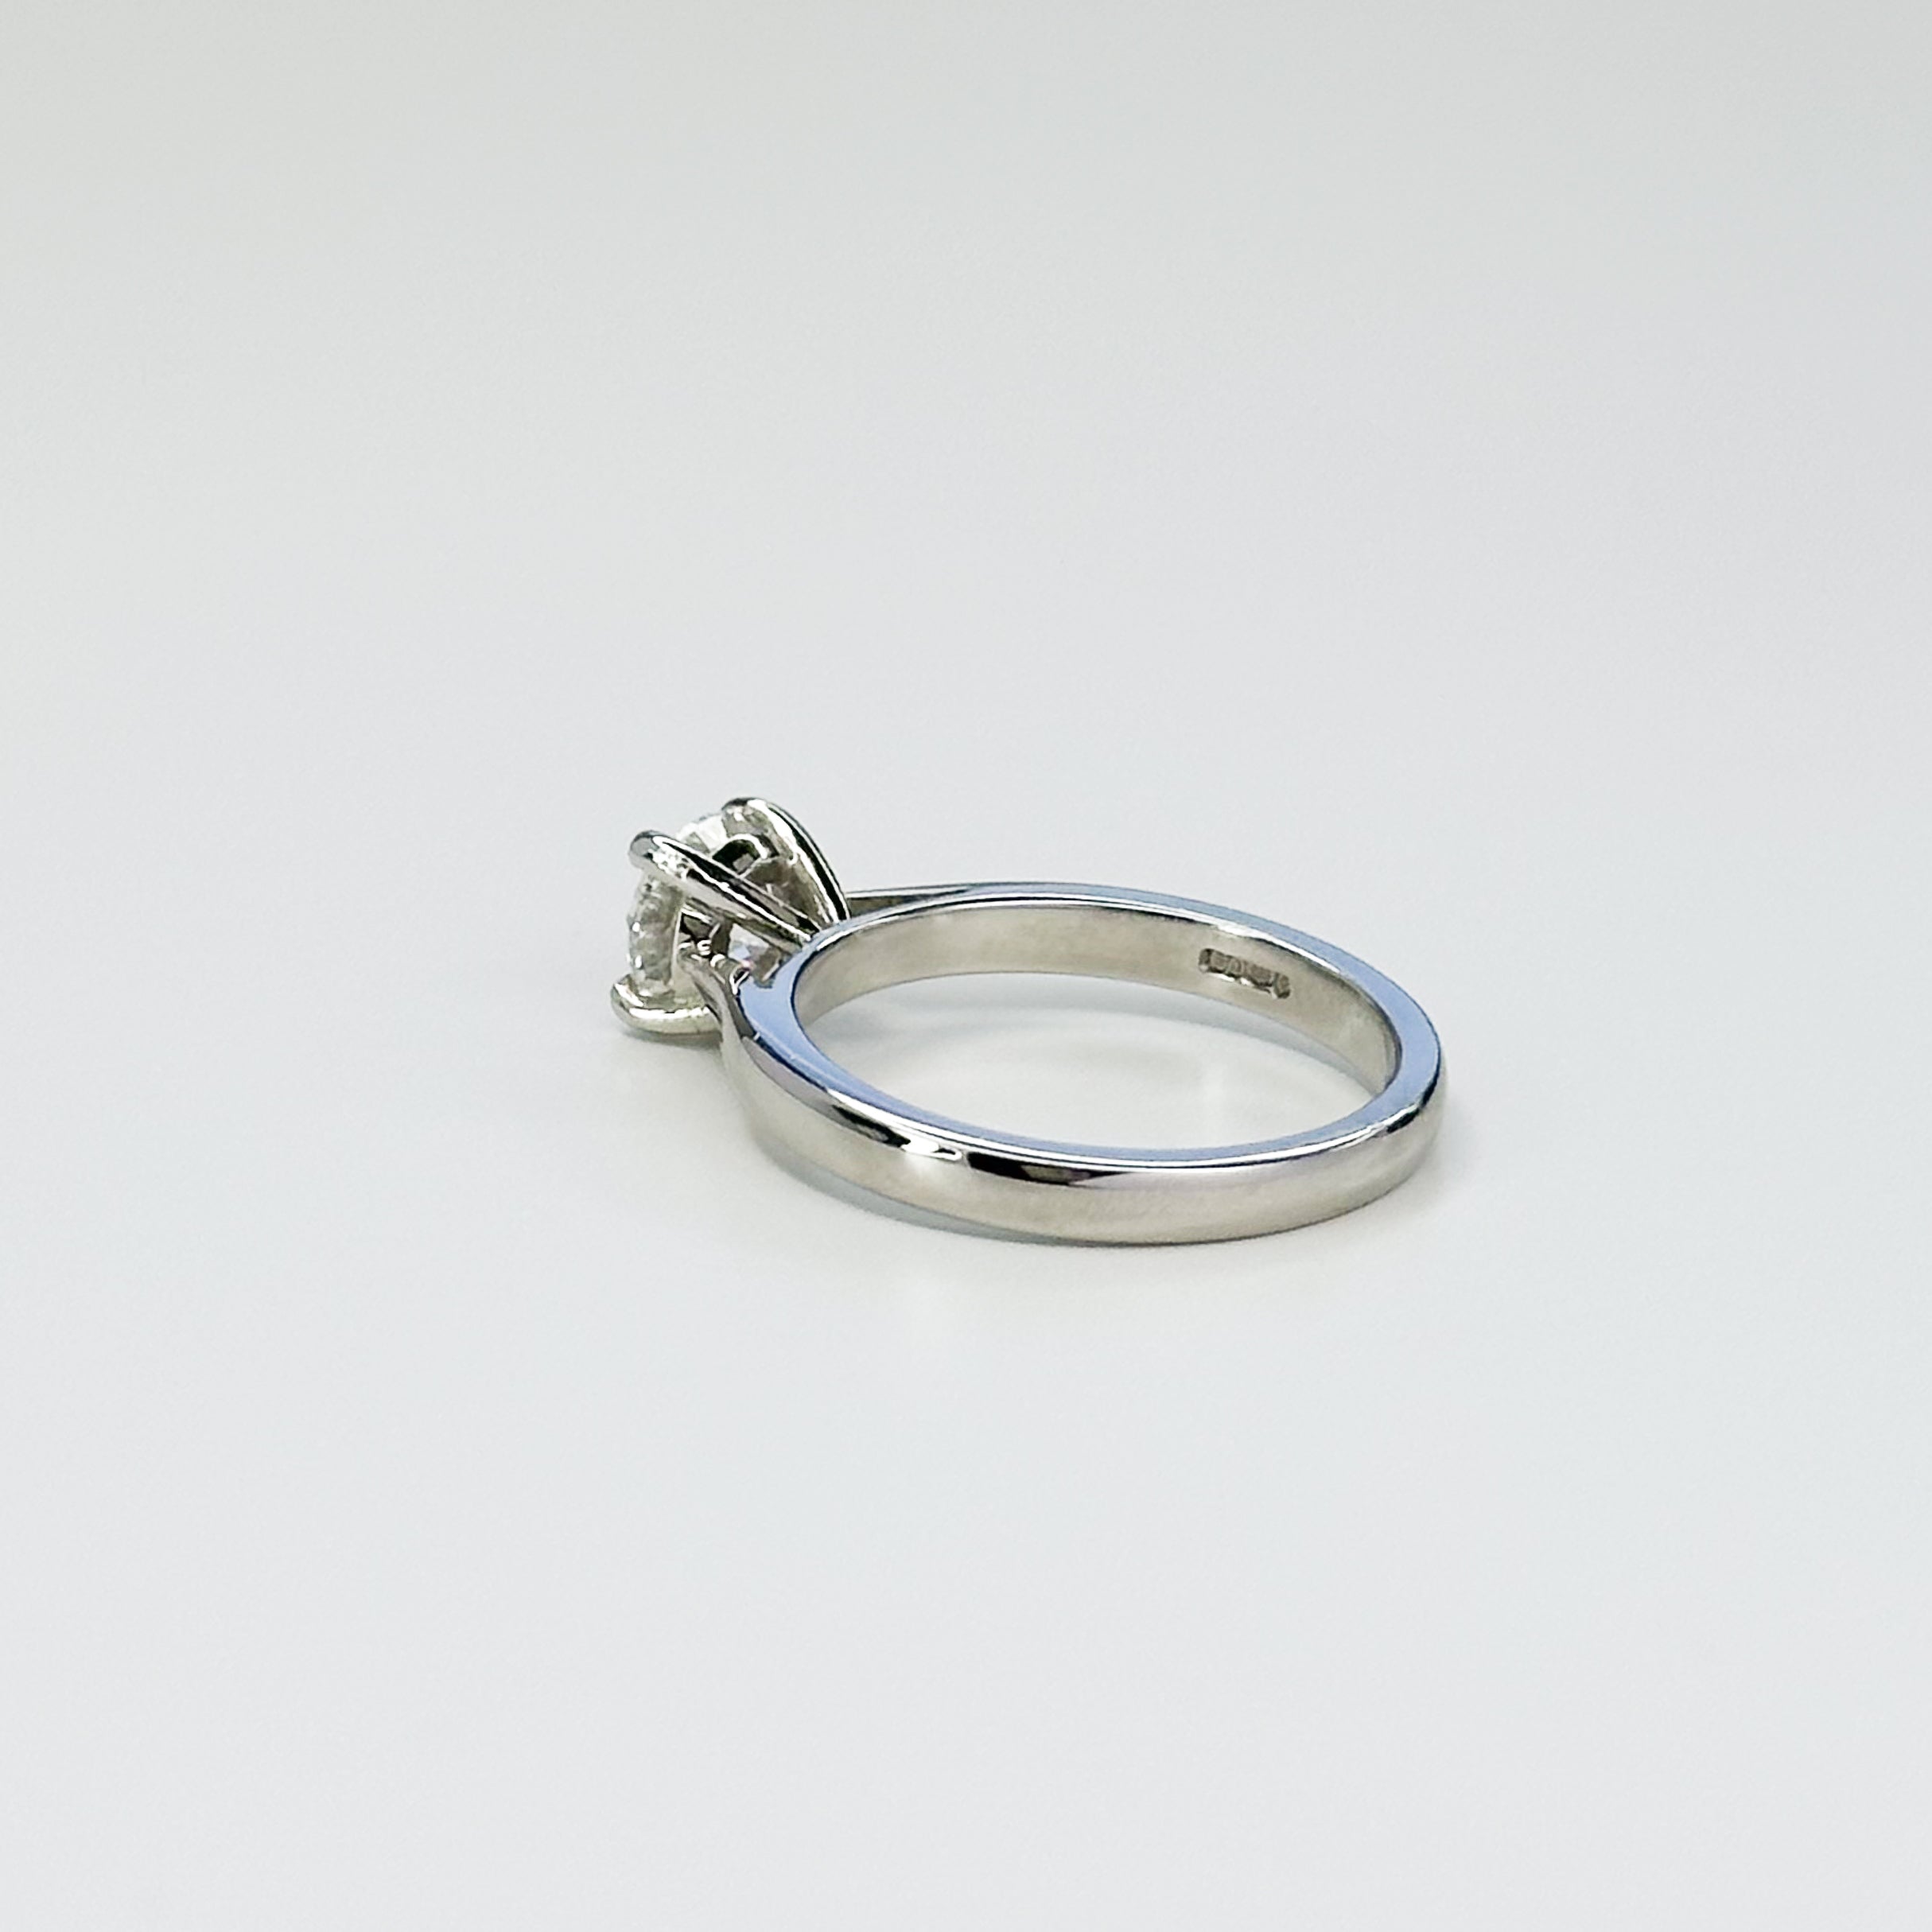 1.01ct GIA Round Cut Diamond Ring